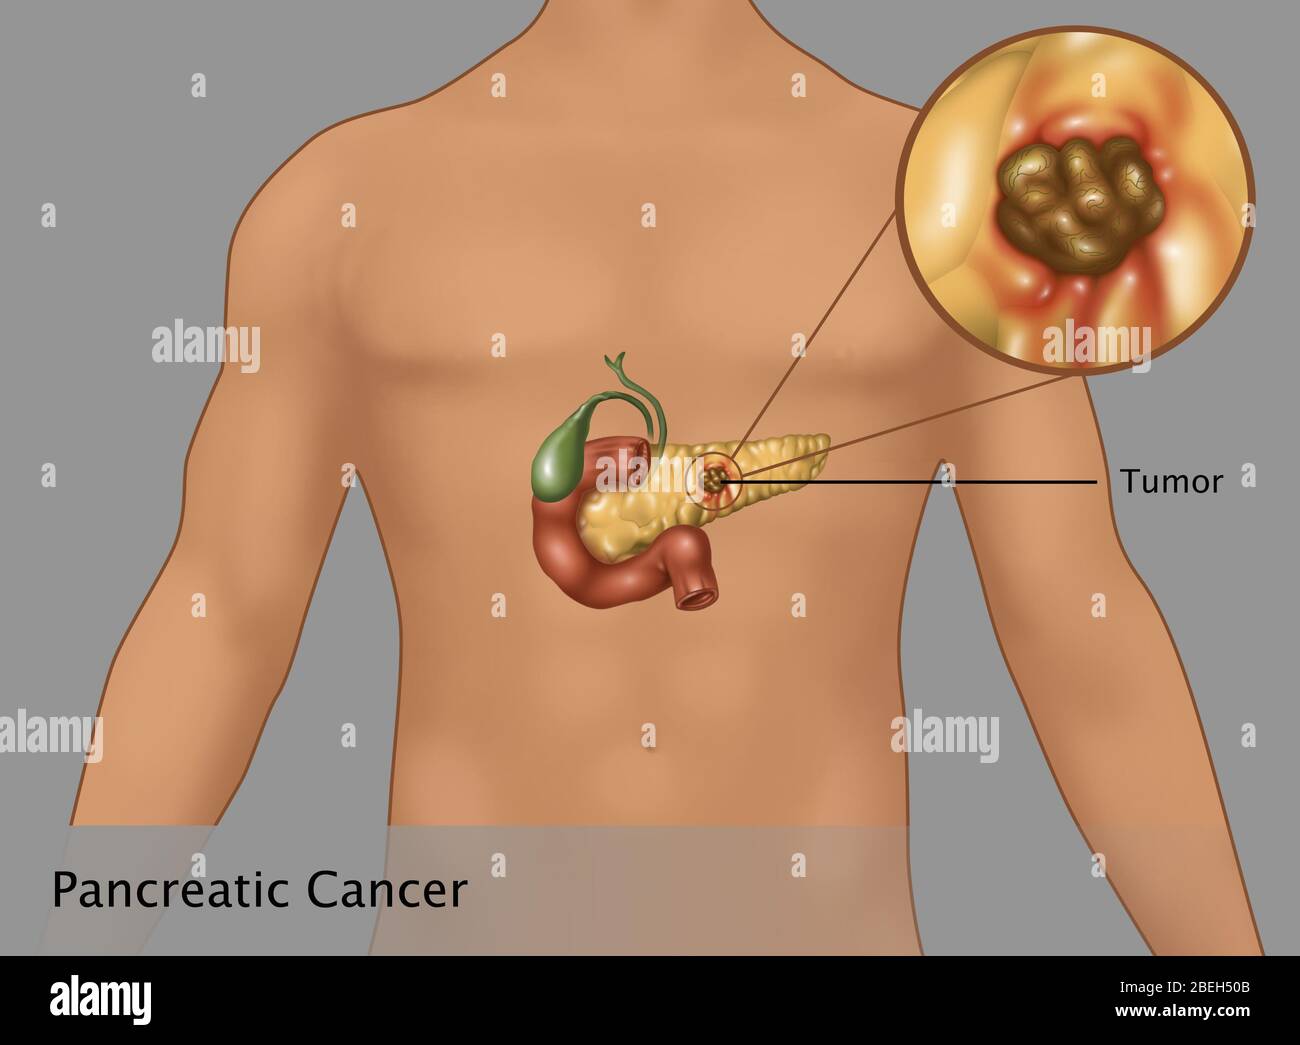 Abbildung des pankreatischen Krebses Einfügung in eine männliche Figur im Überblick. Herzstück der Bauchspeicheldrüse ist der Tumor (braune Fläche). Vorhanden sind auch die Gallenblase (grün) und Zwölffingerdarm (rote verbrannt). Stockfoto